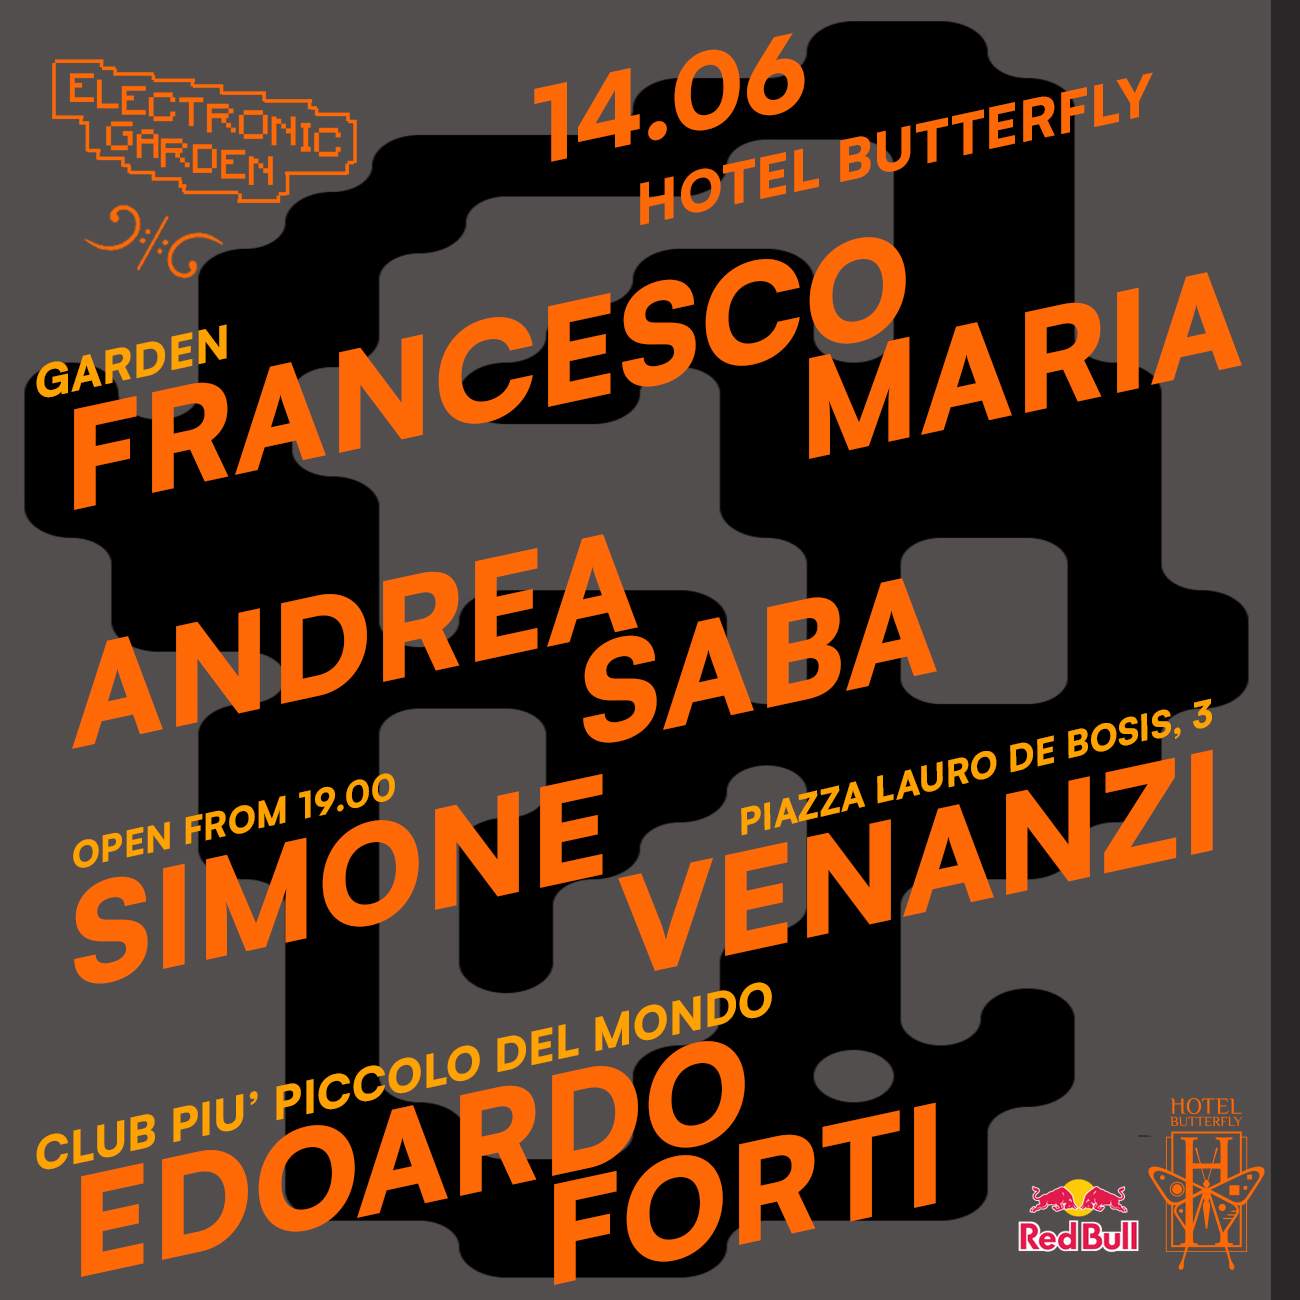 Electronic Garden: Francesco Maria, Andrea Saba, Simone Venanzi, Edoardo Forti - Página frontal